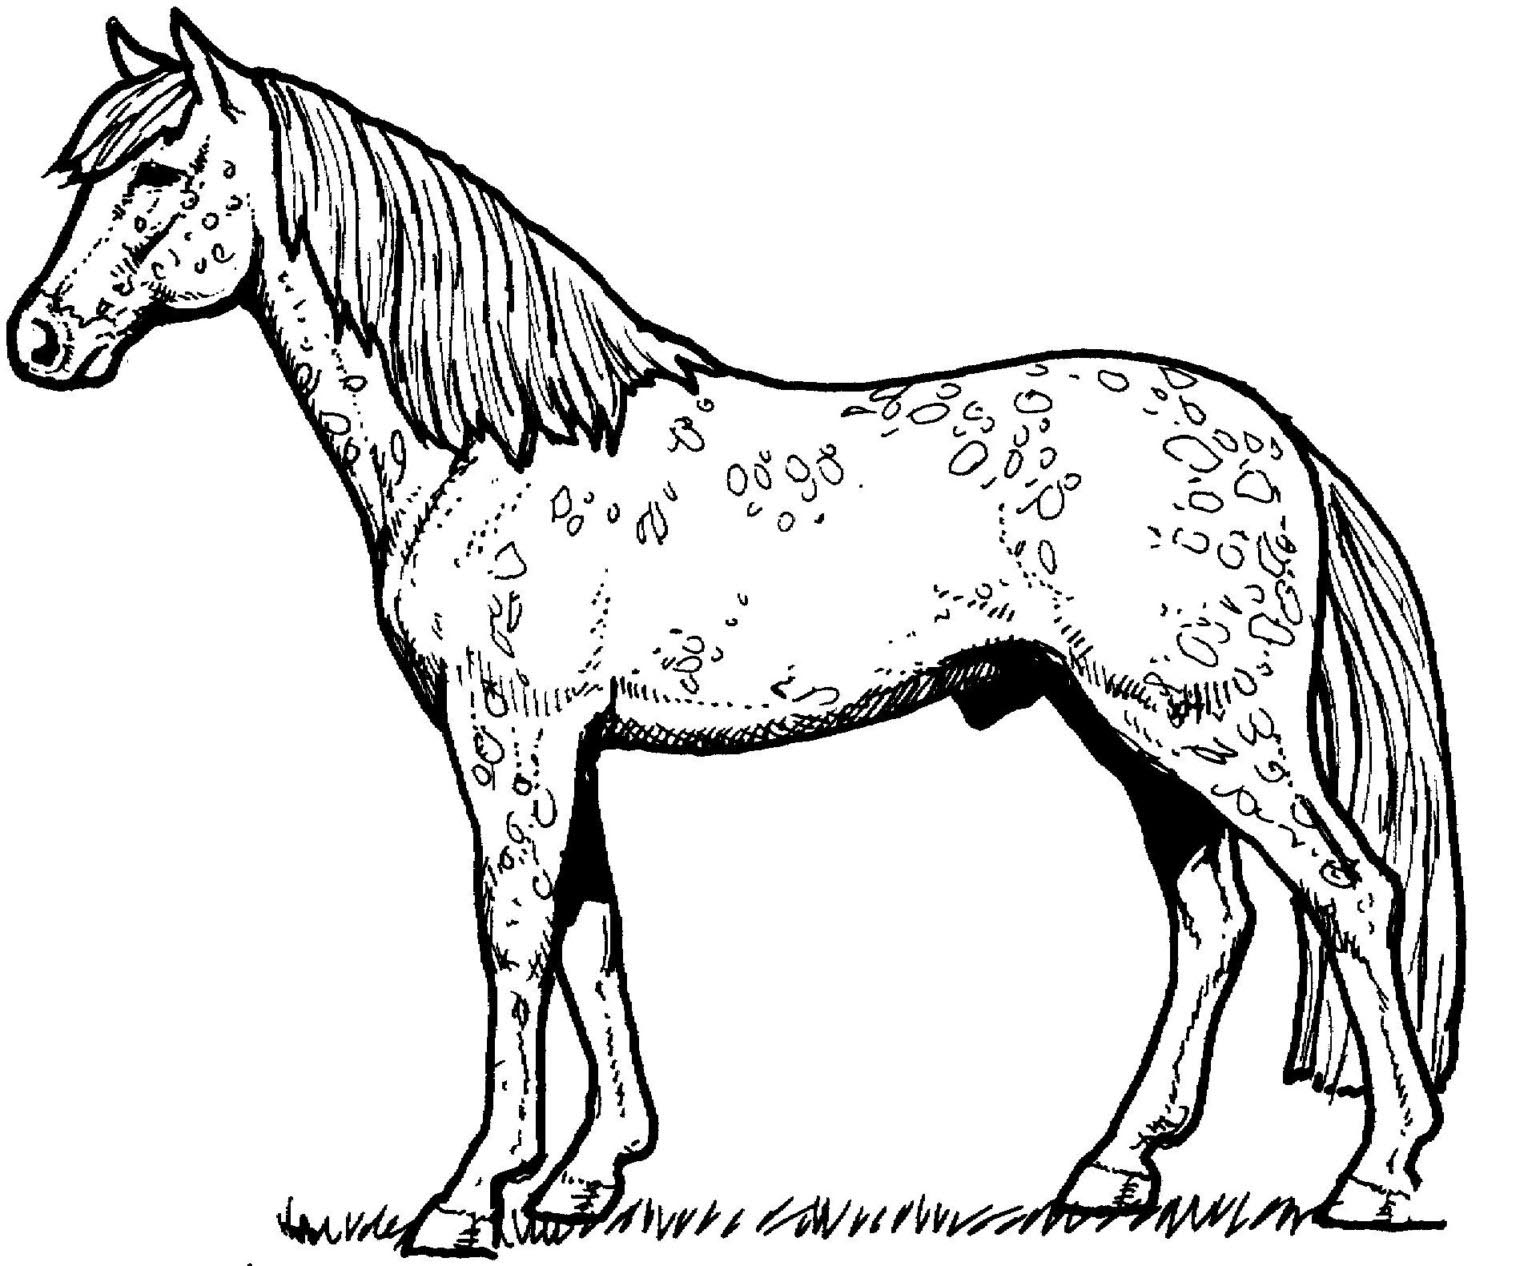 Tổng hợp các bức tranh tô màu con ngựa cho bé